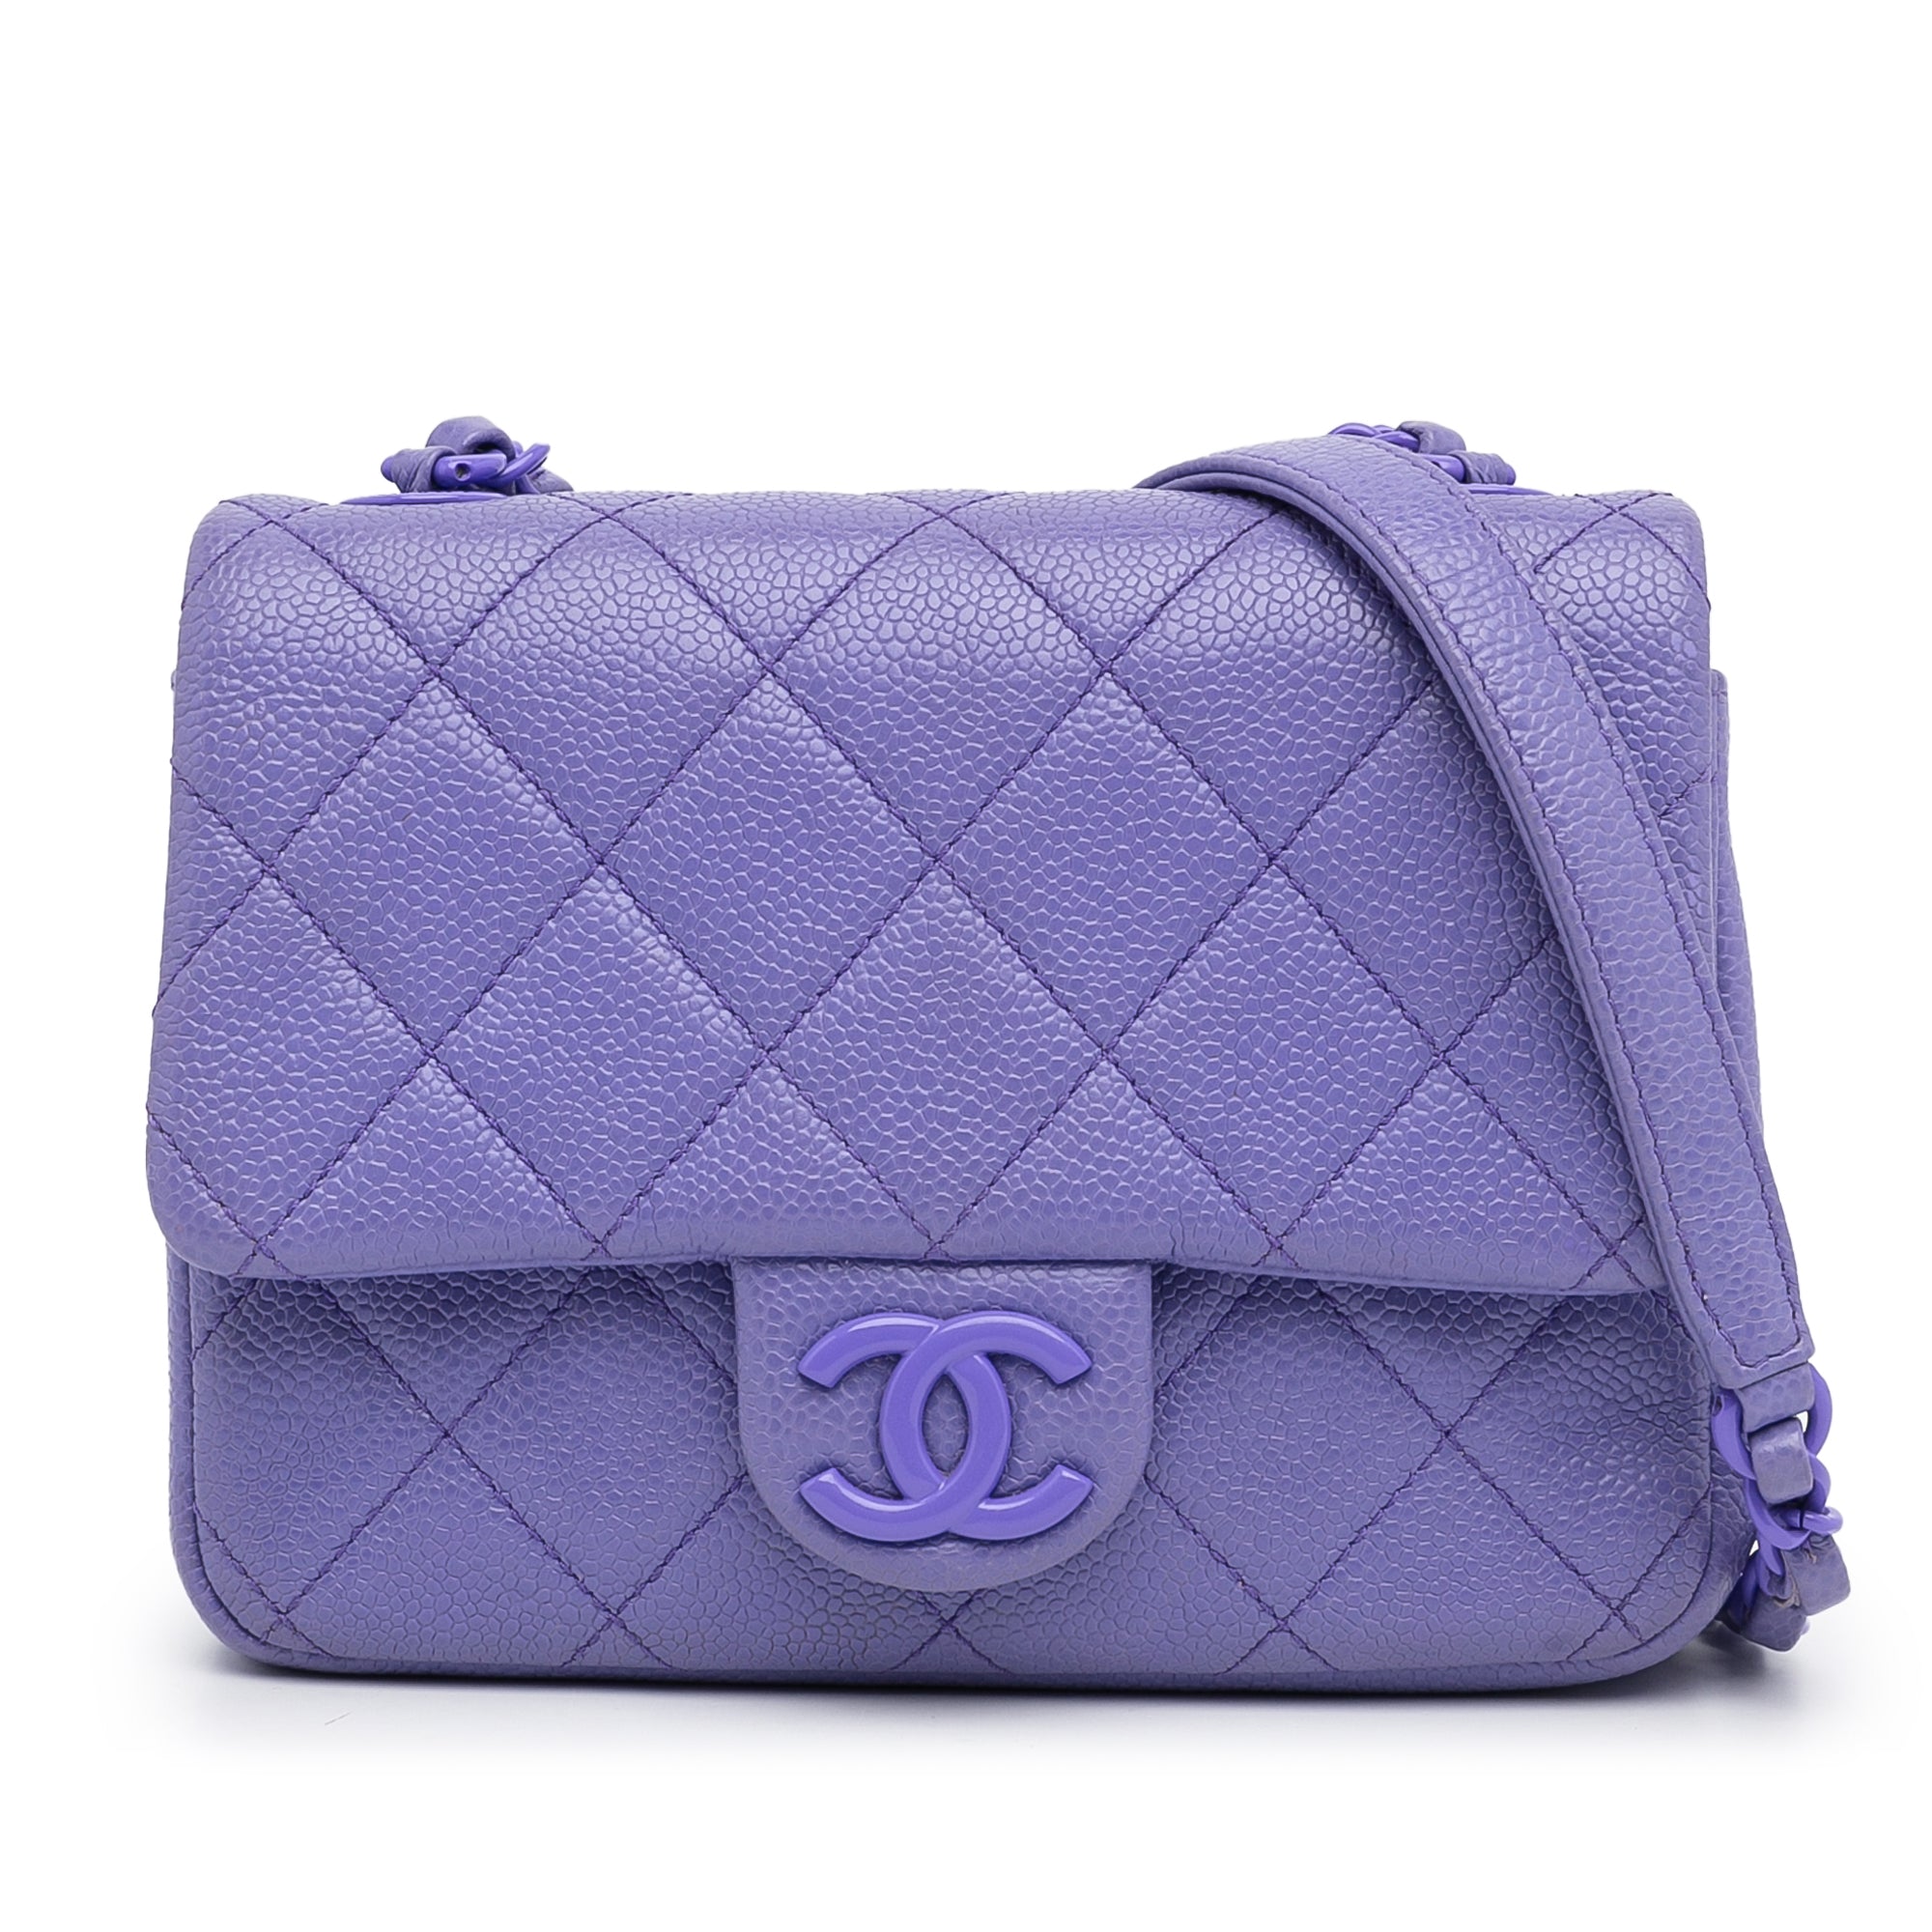 Chanel Incognito Mini Square Flap Bag